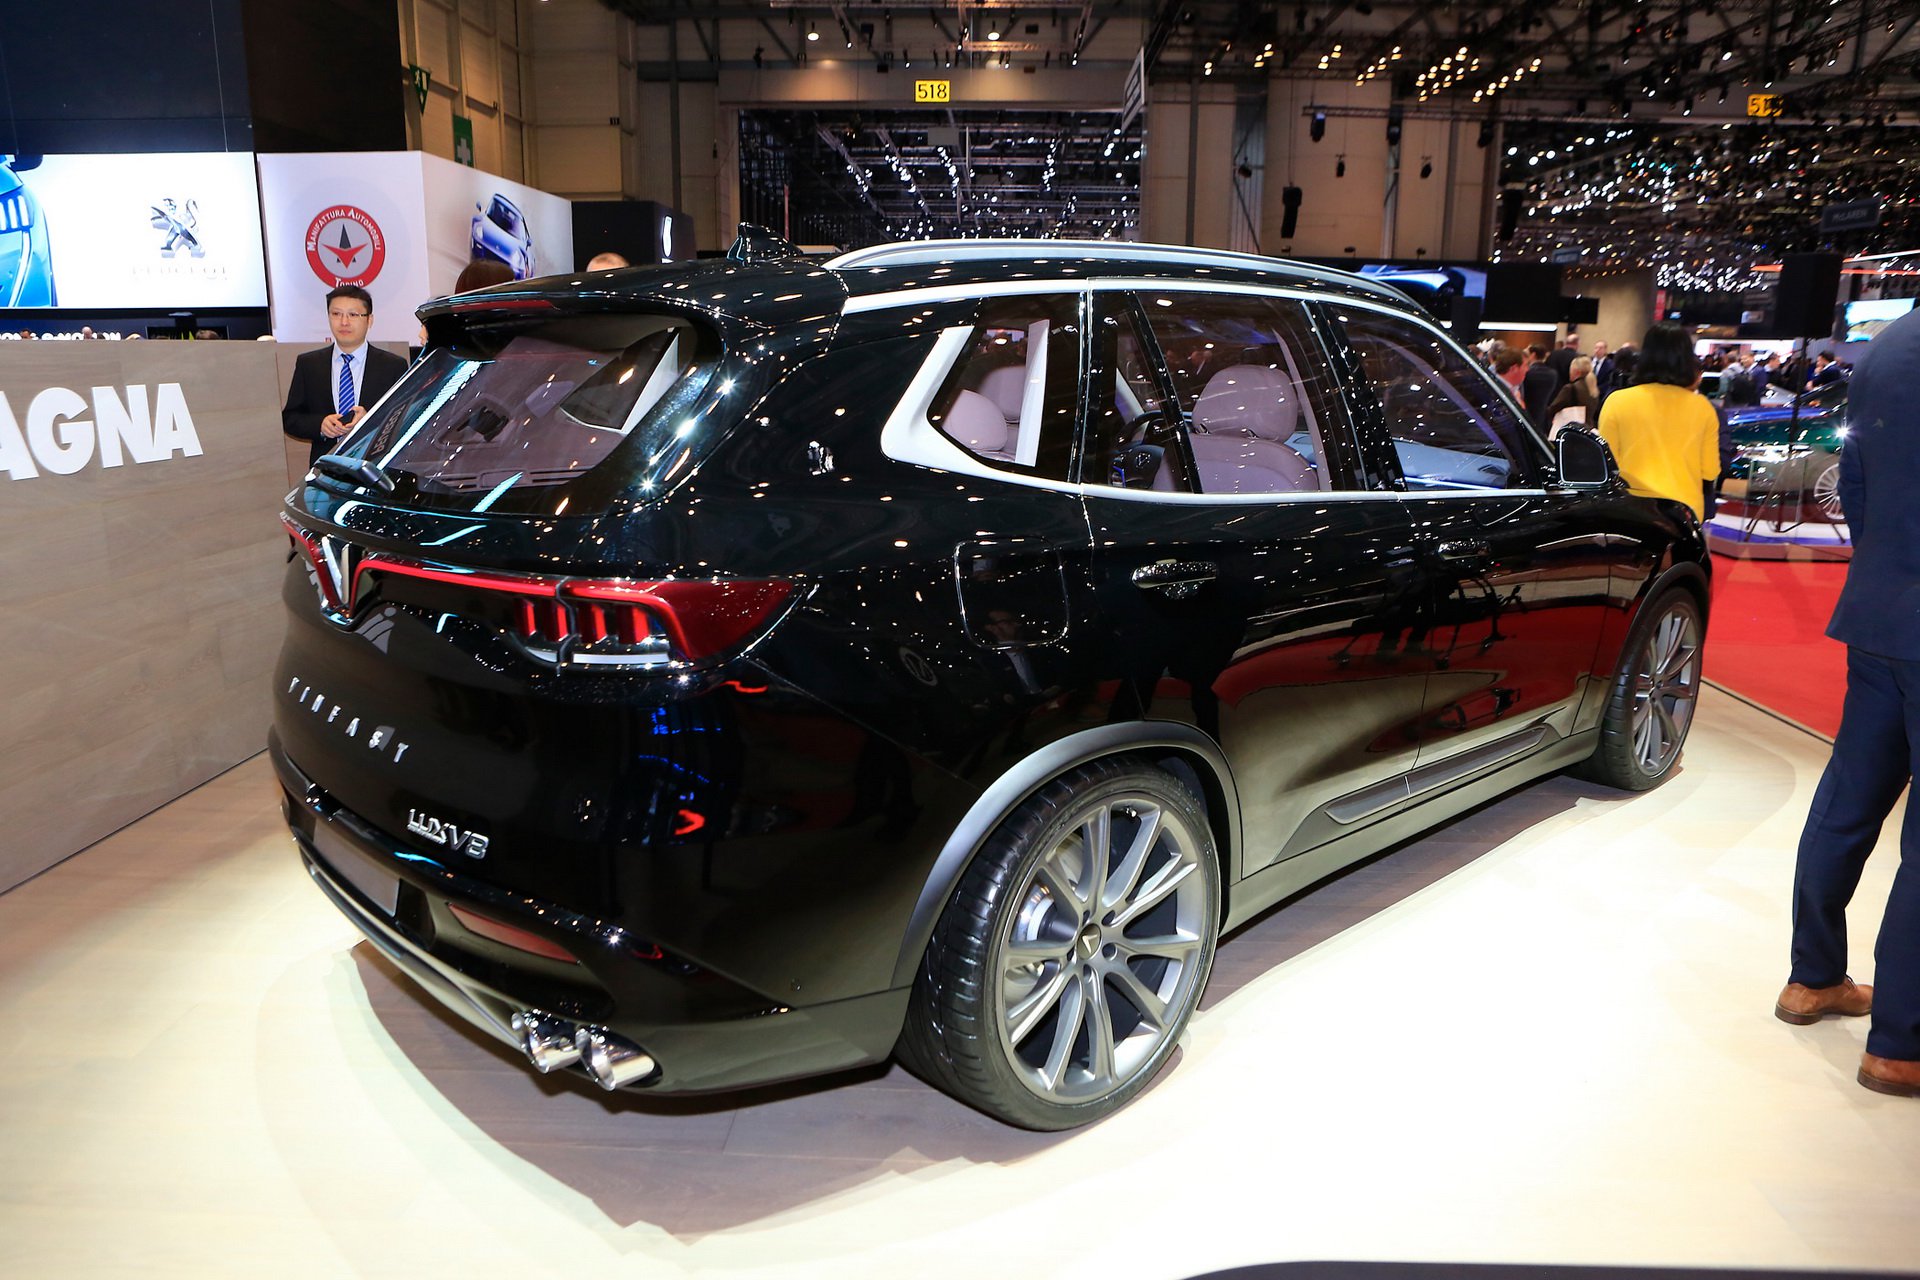 Berita, Vinfast Lux V8 belakang: Geneva Motor Show 2019 : Vinfast Lux V8, SUV Vietnam Dengan tenaga 455 hp